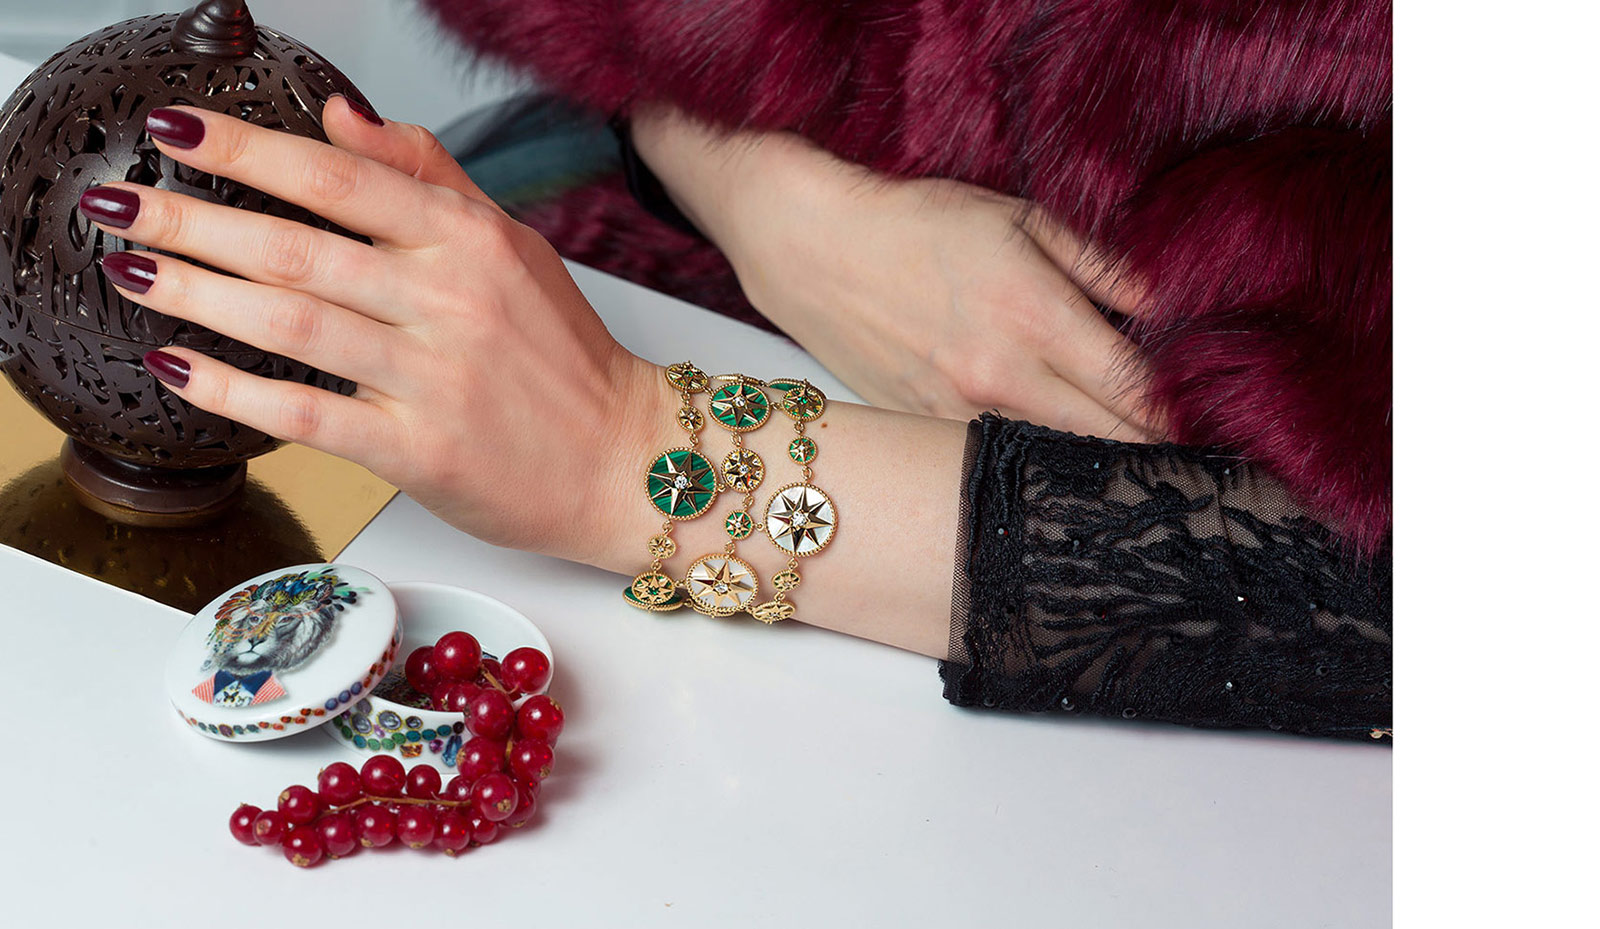 Кафф-браслеты Dior Joaillerie Rose des Vents из желтого золота с бриллиантами, изумрудами, перламутром и малахитом в сочетании с платьем и накидкой от Promulias